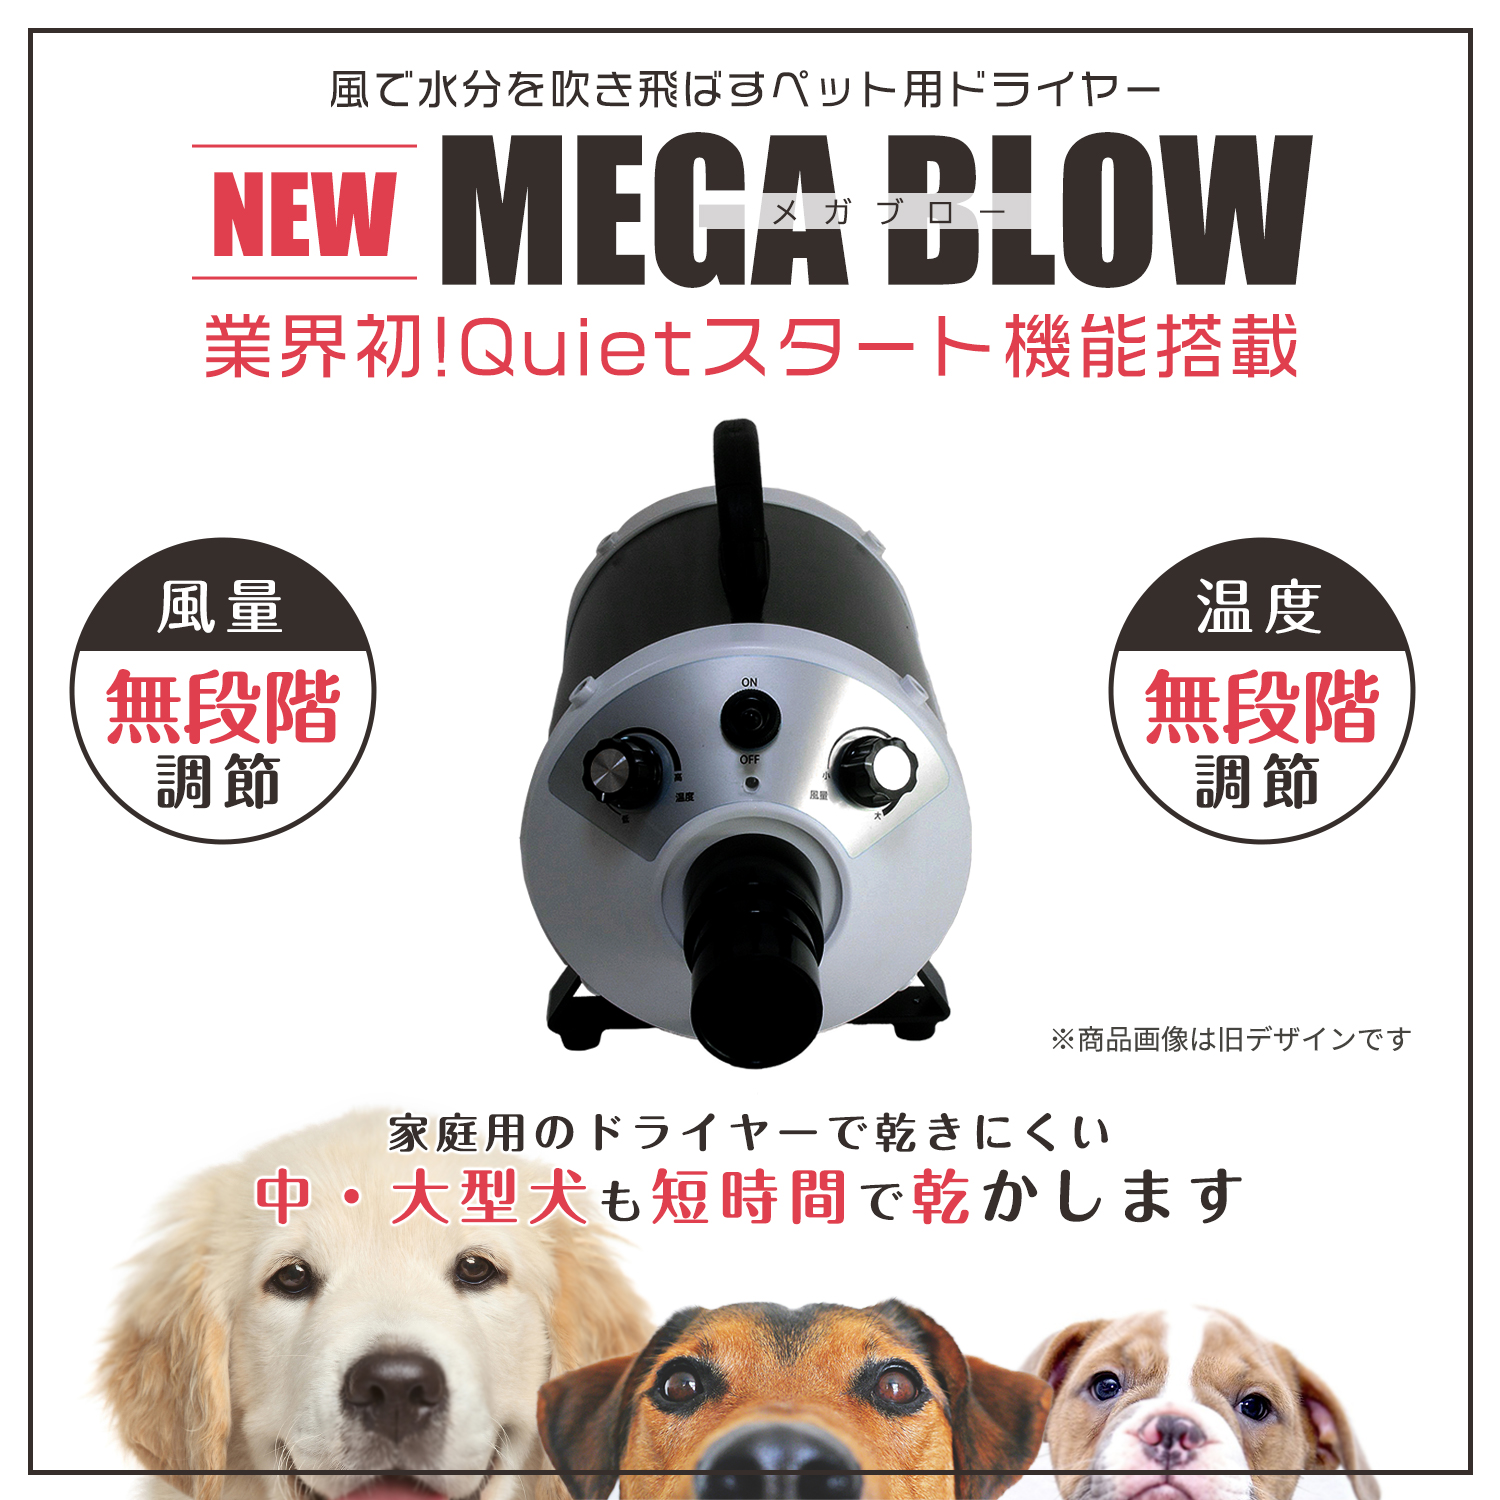 Megablow – MEGA BLOW